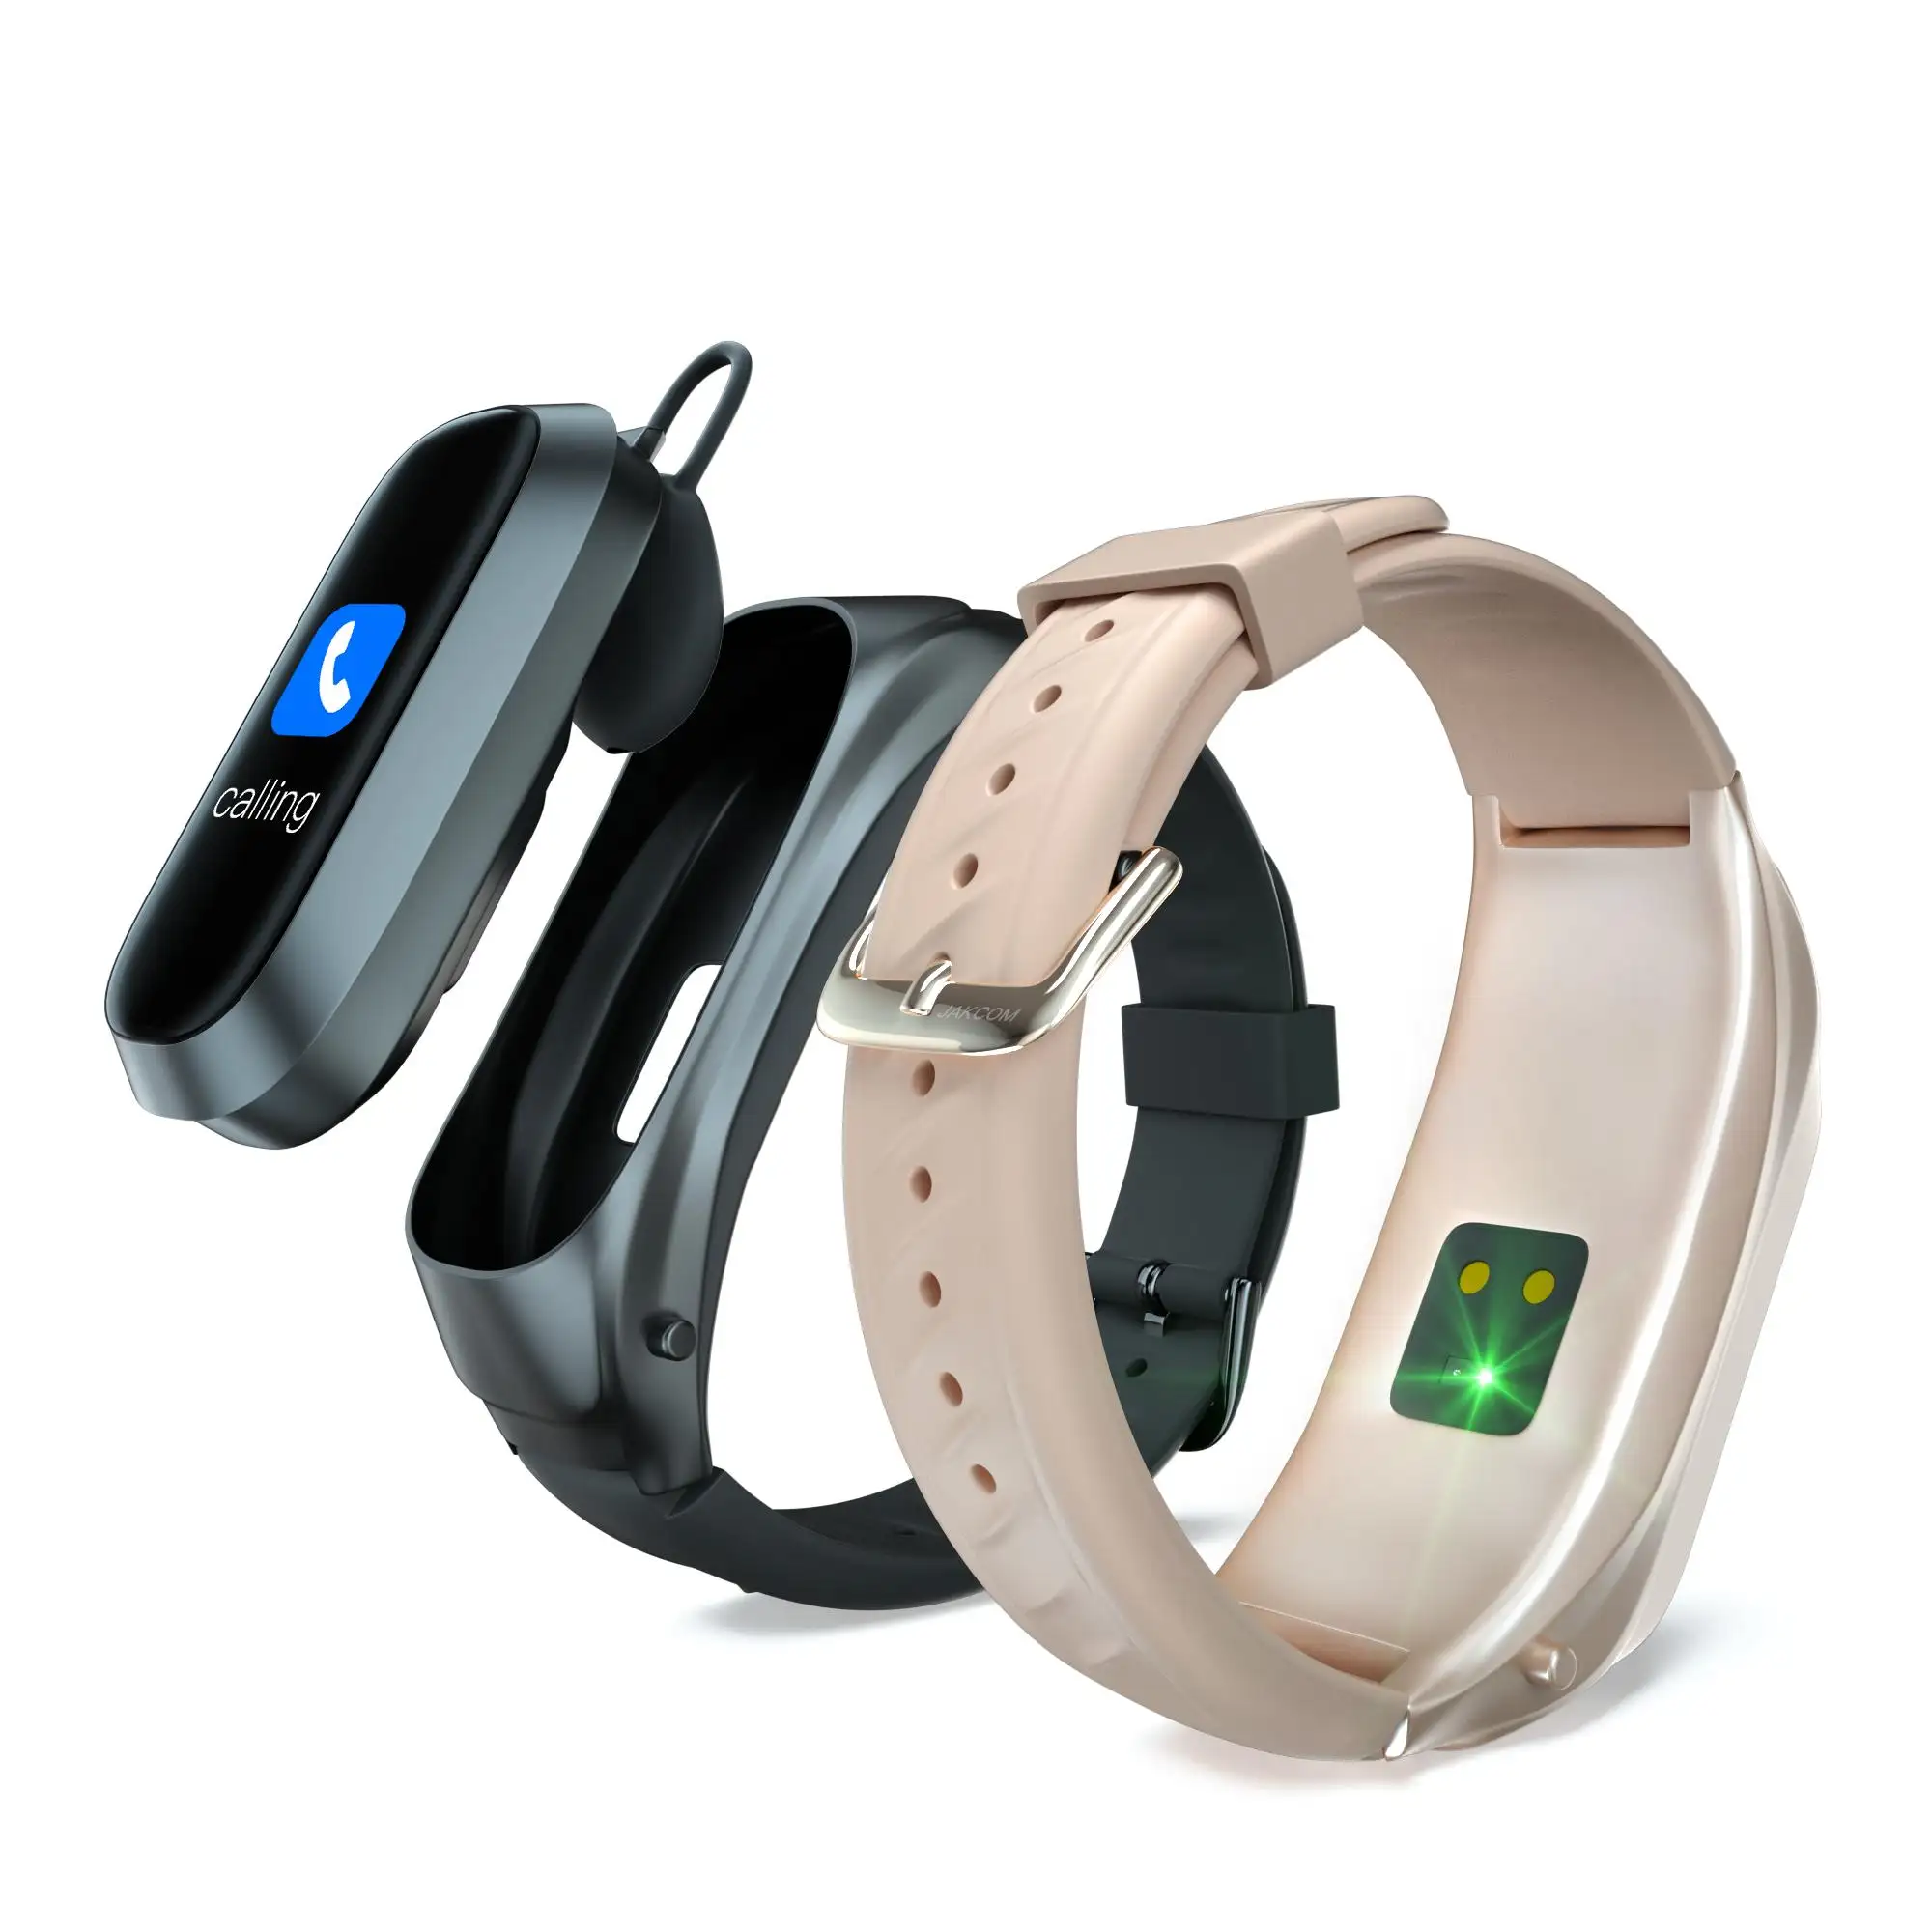 Jakcom relógio inteligente b6, novo relógio premium de telefones celulares, venda quente, com smartwatch manual